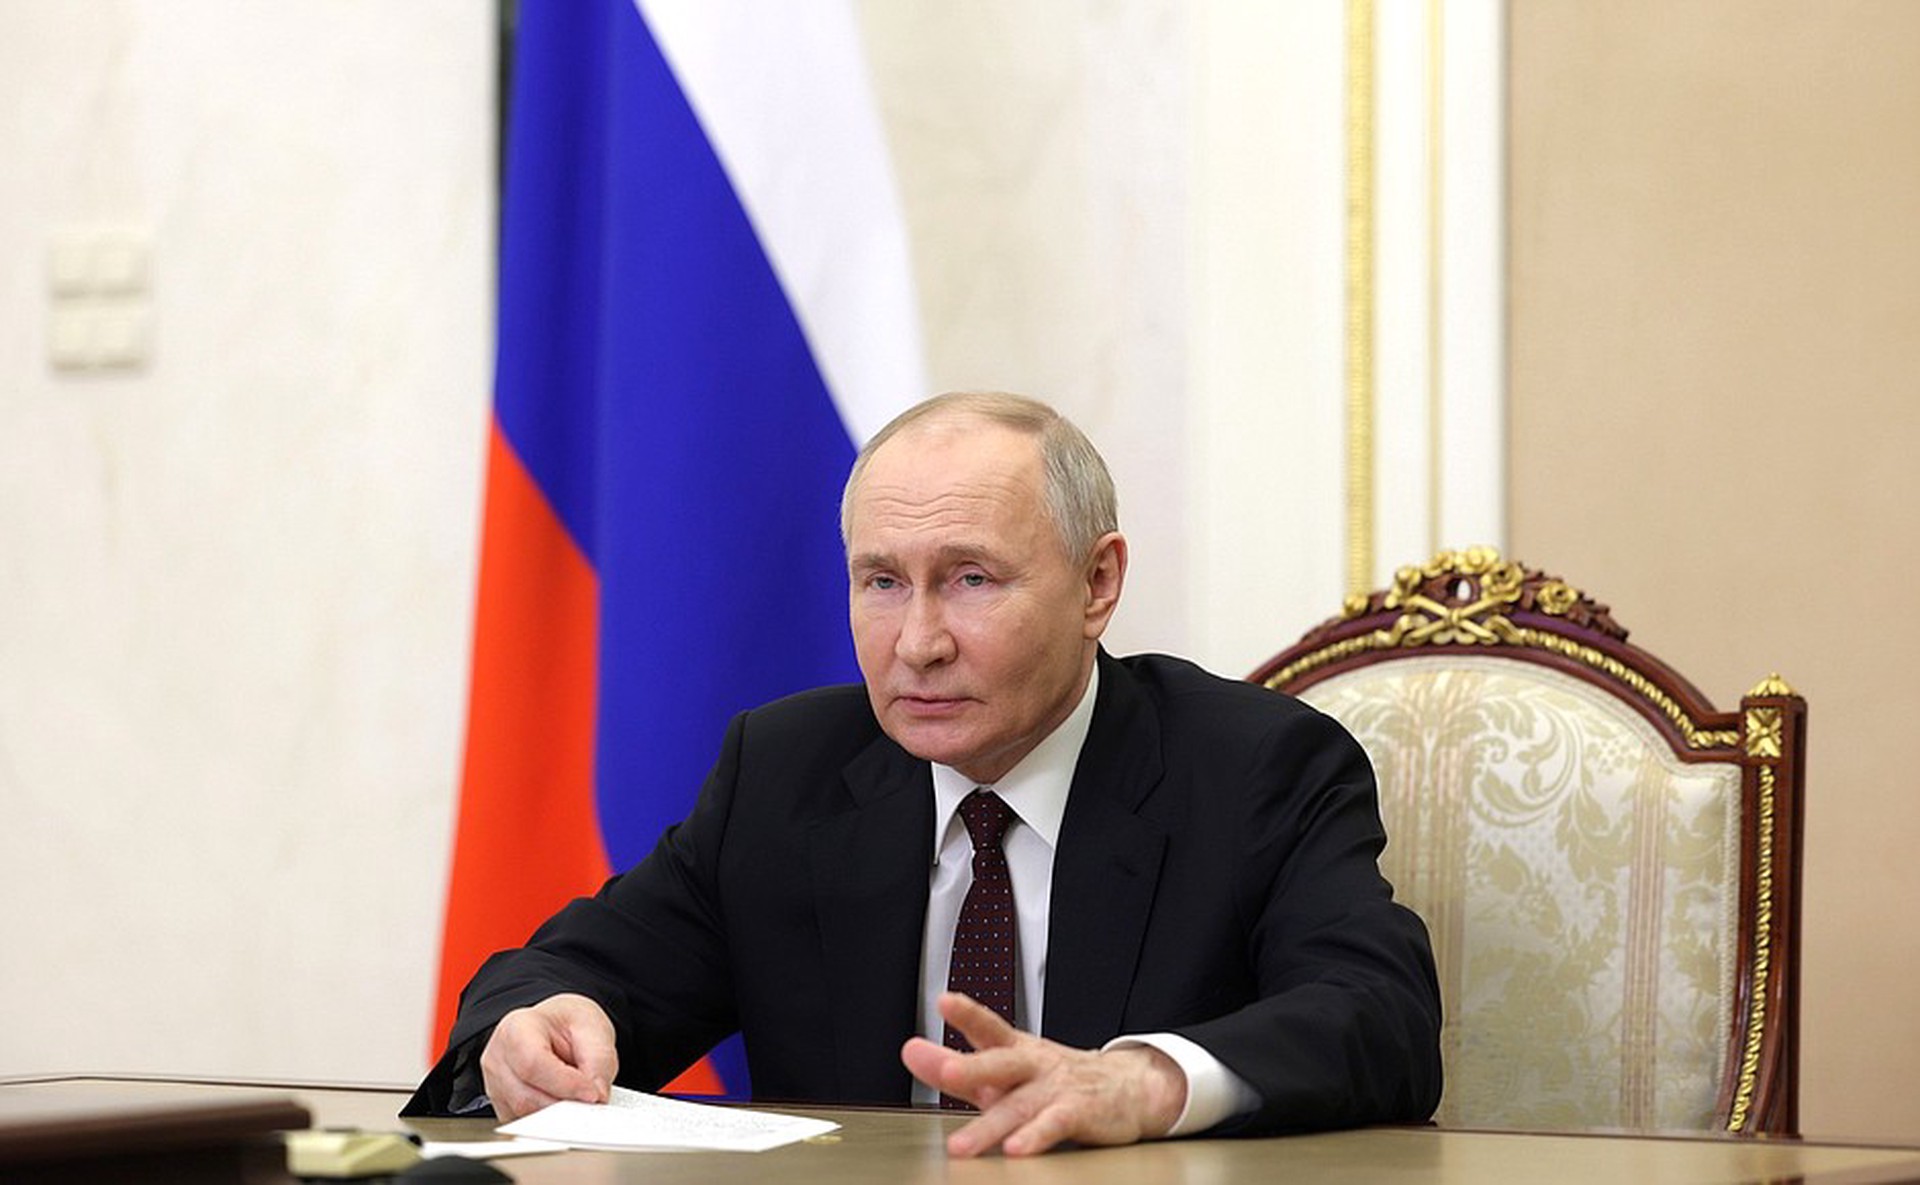 Ушаков: Предложения Путина по Украине перечеркнули итоги швейцарской конференции